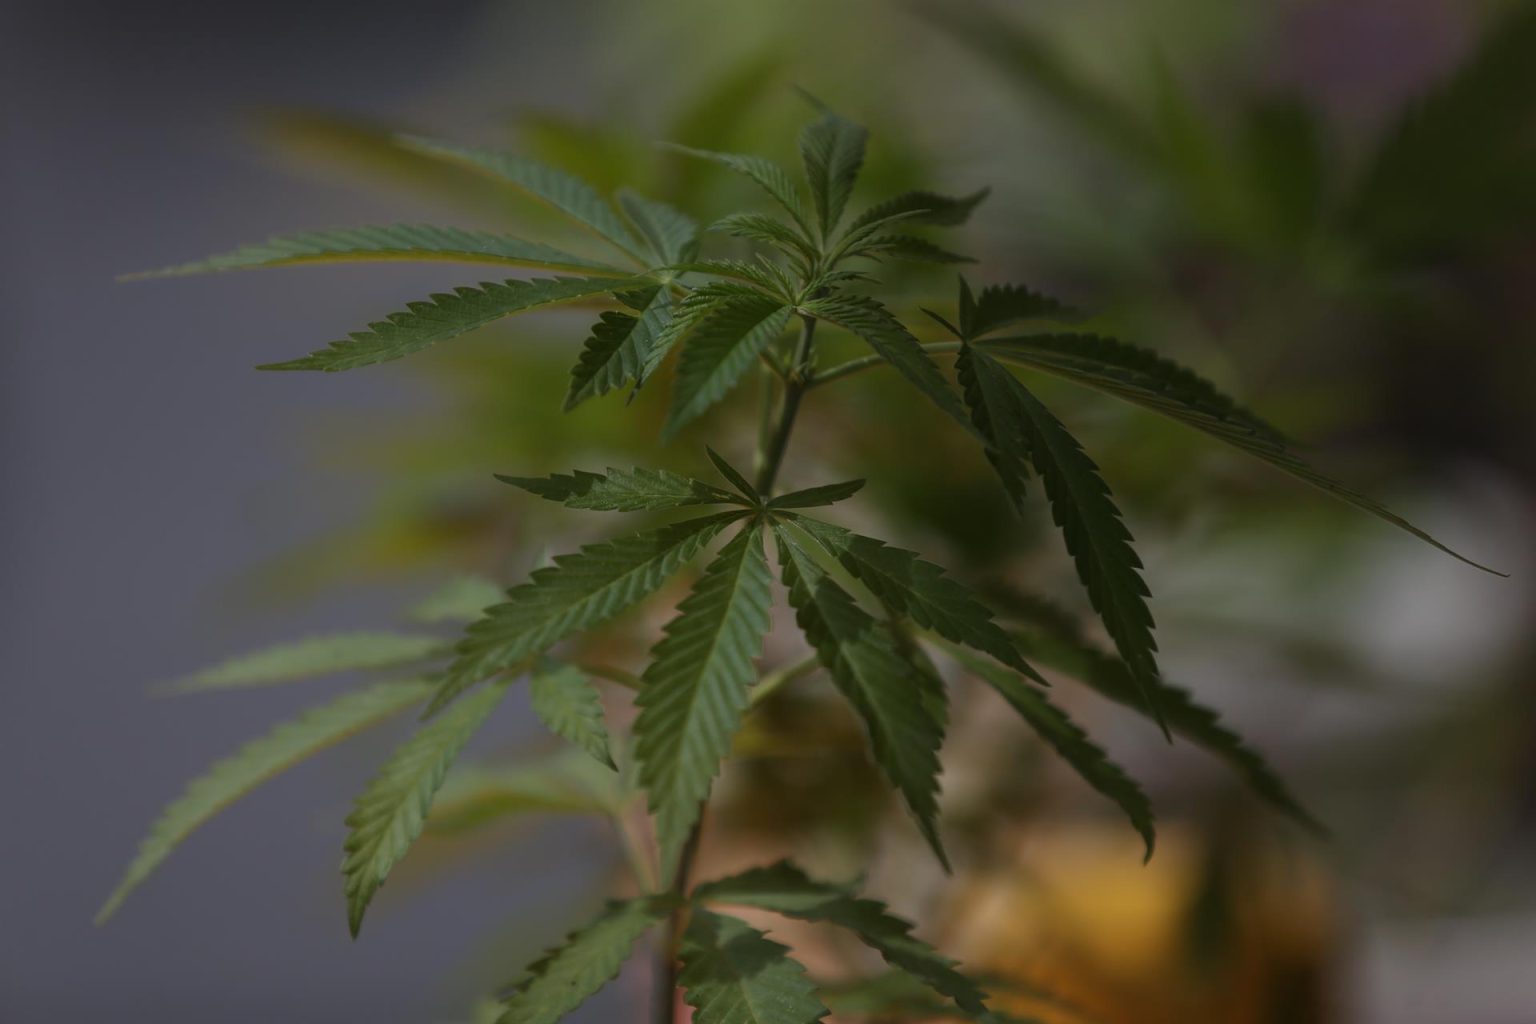 Vista de una planta de marihuana, imagen de archivo. EFE/Sáshenka Gutiérrez